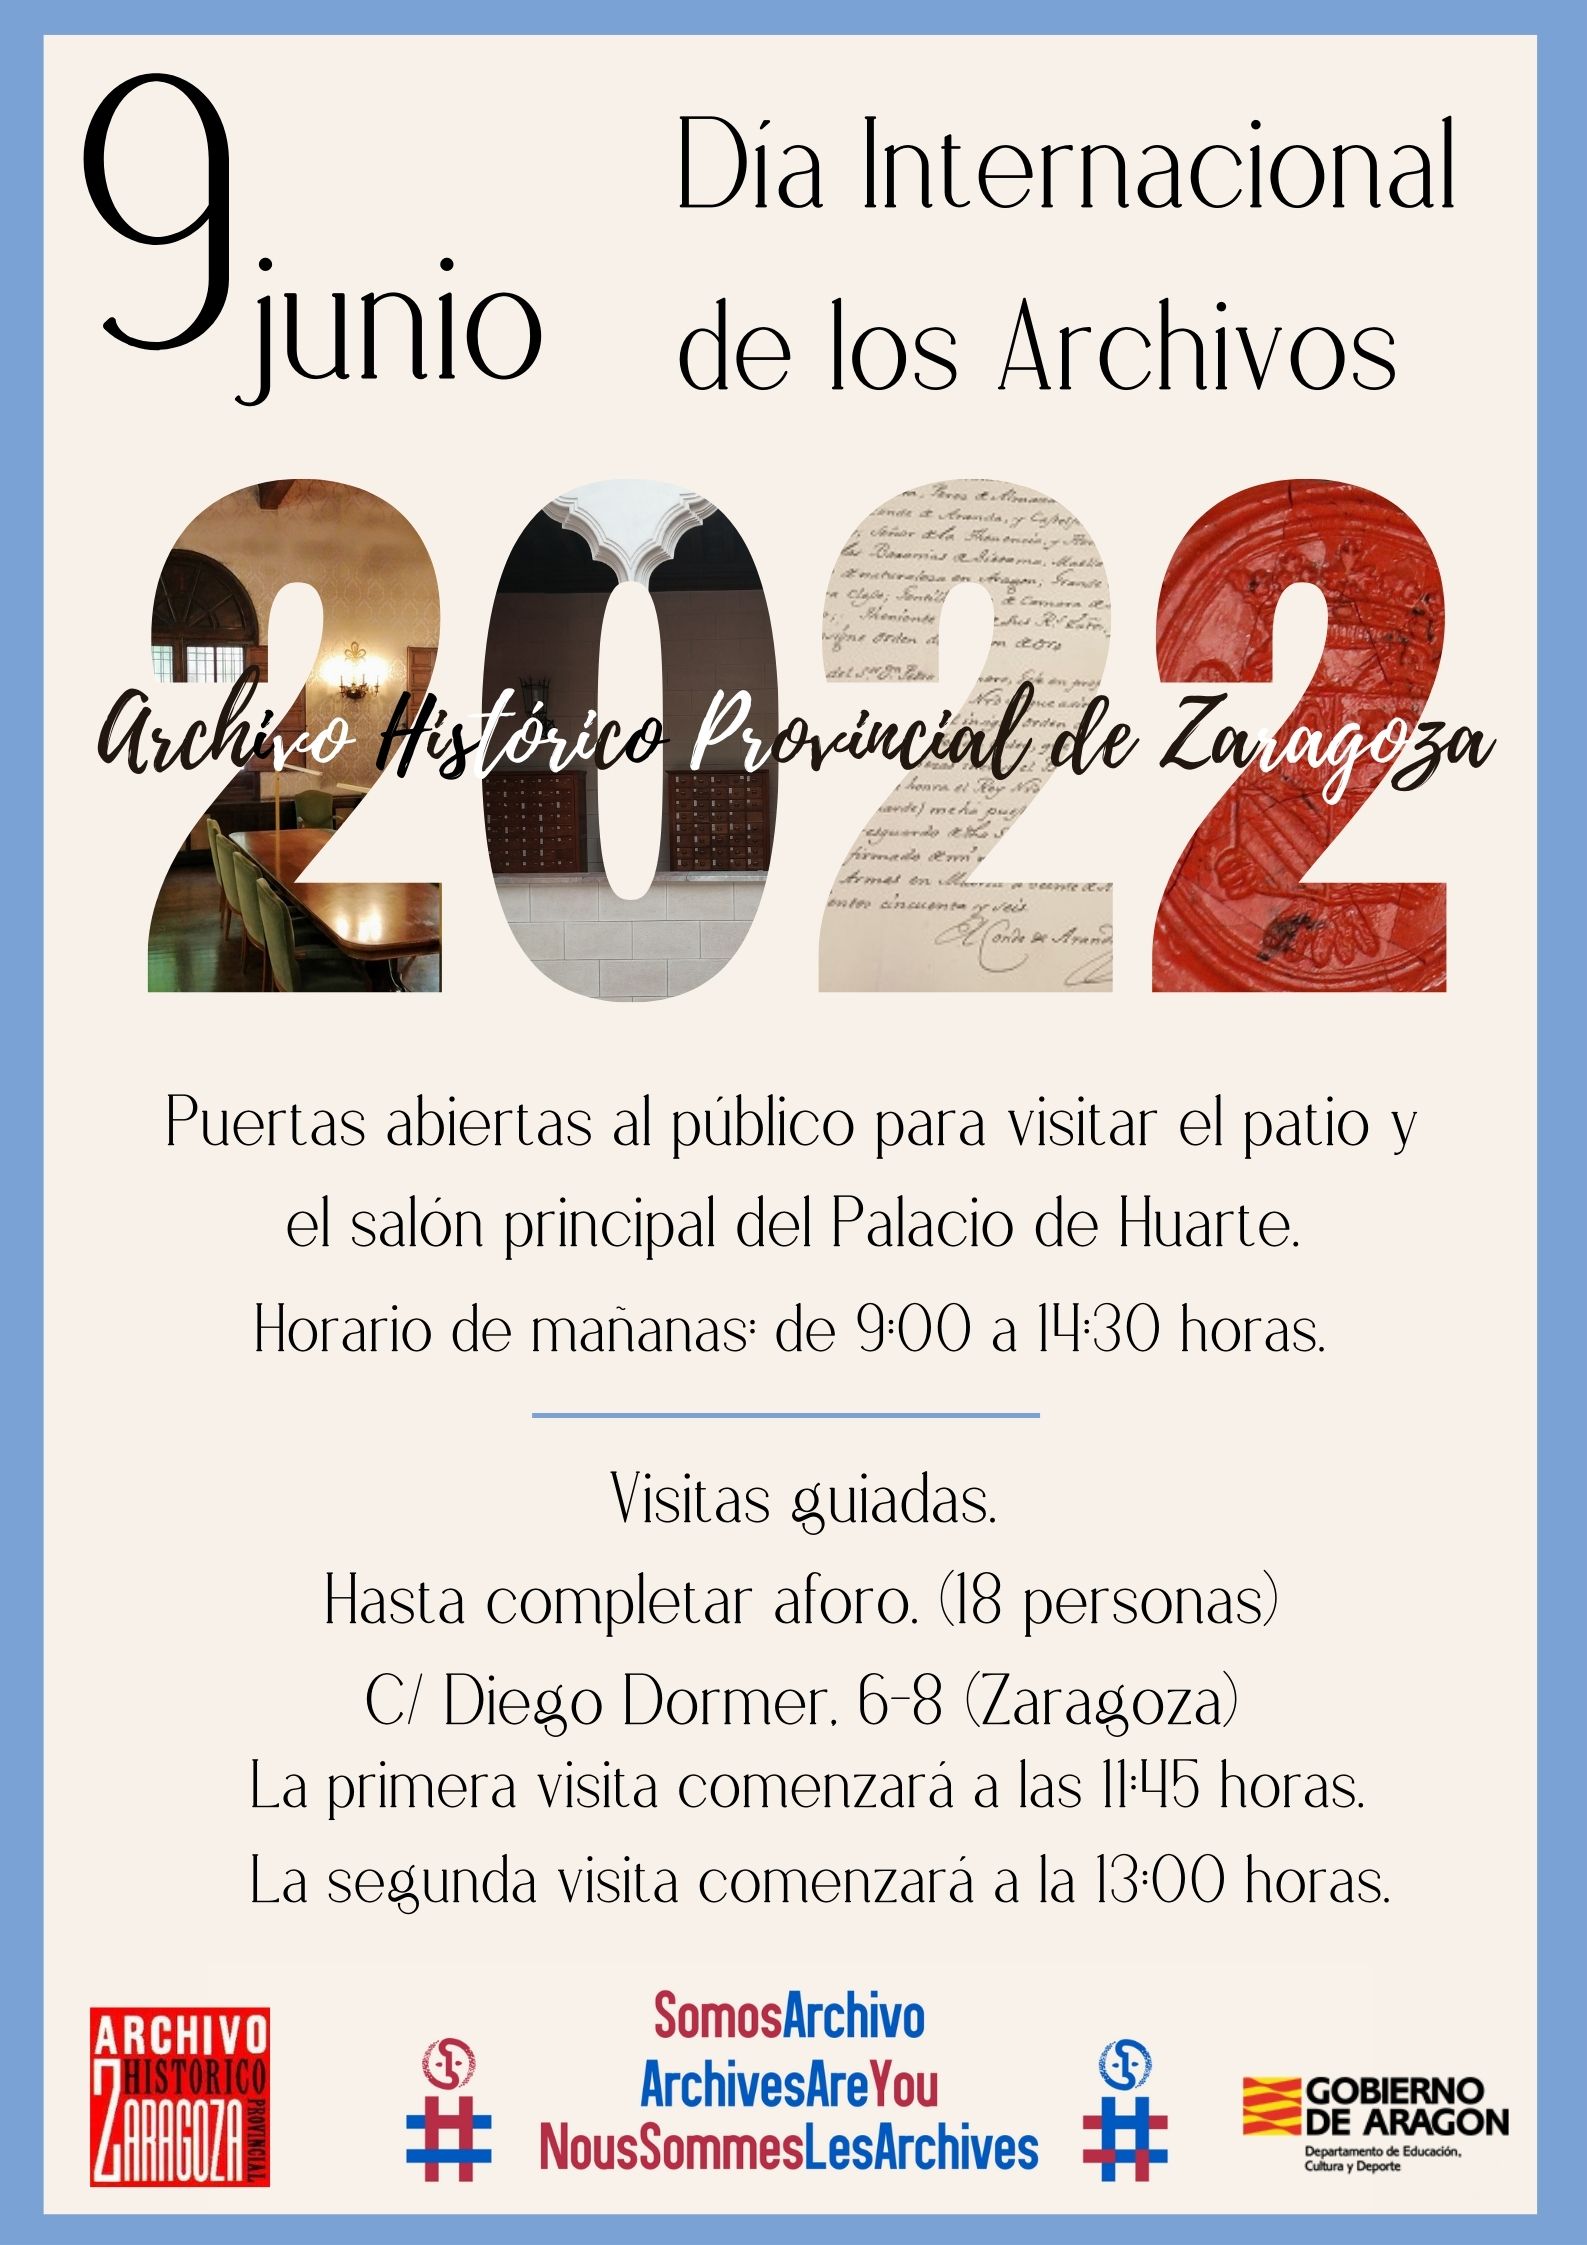 DARA Documentos y Archivos de Aragón (@DARA_Aragon) / Twitter